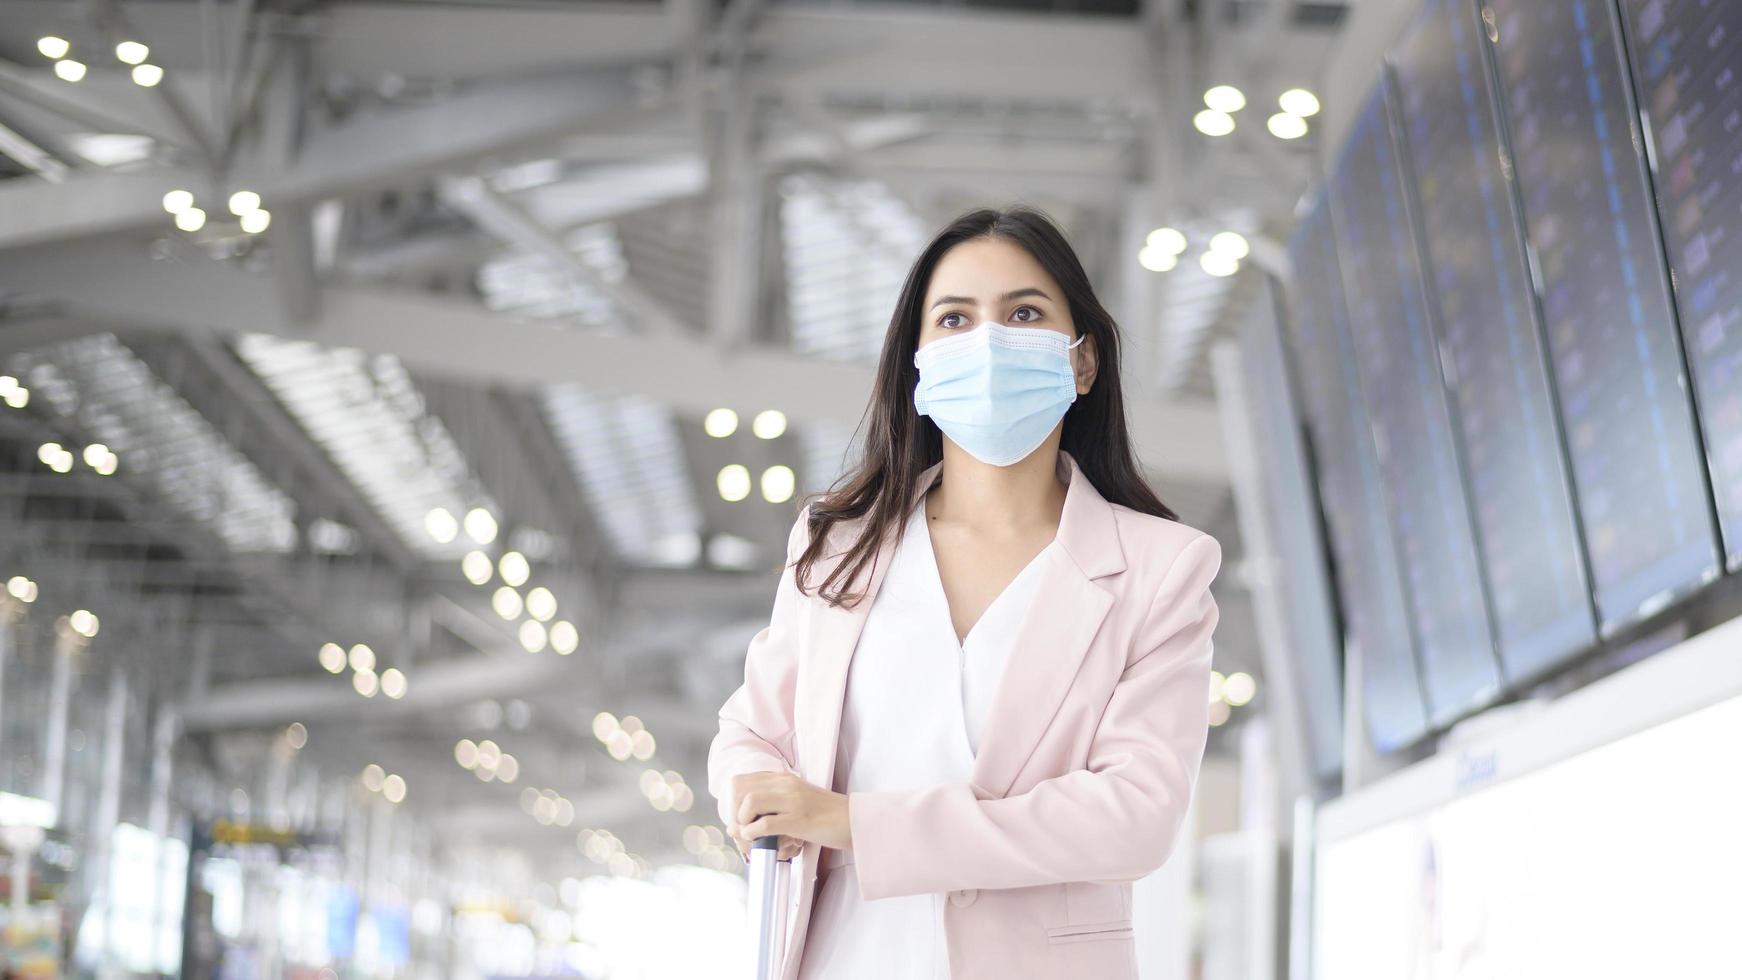 une femme d'affaires porte un masque de protection à l'aéroport international, voyage sous la pandémie de covid-19, voyages de sécurité, protocole de distanciation sociale, nouveau concept de voyage normal photo